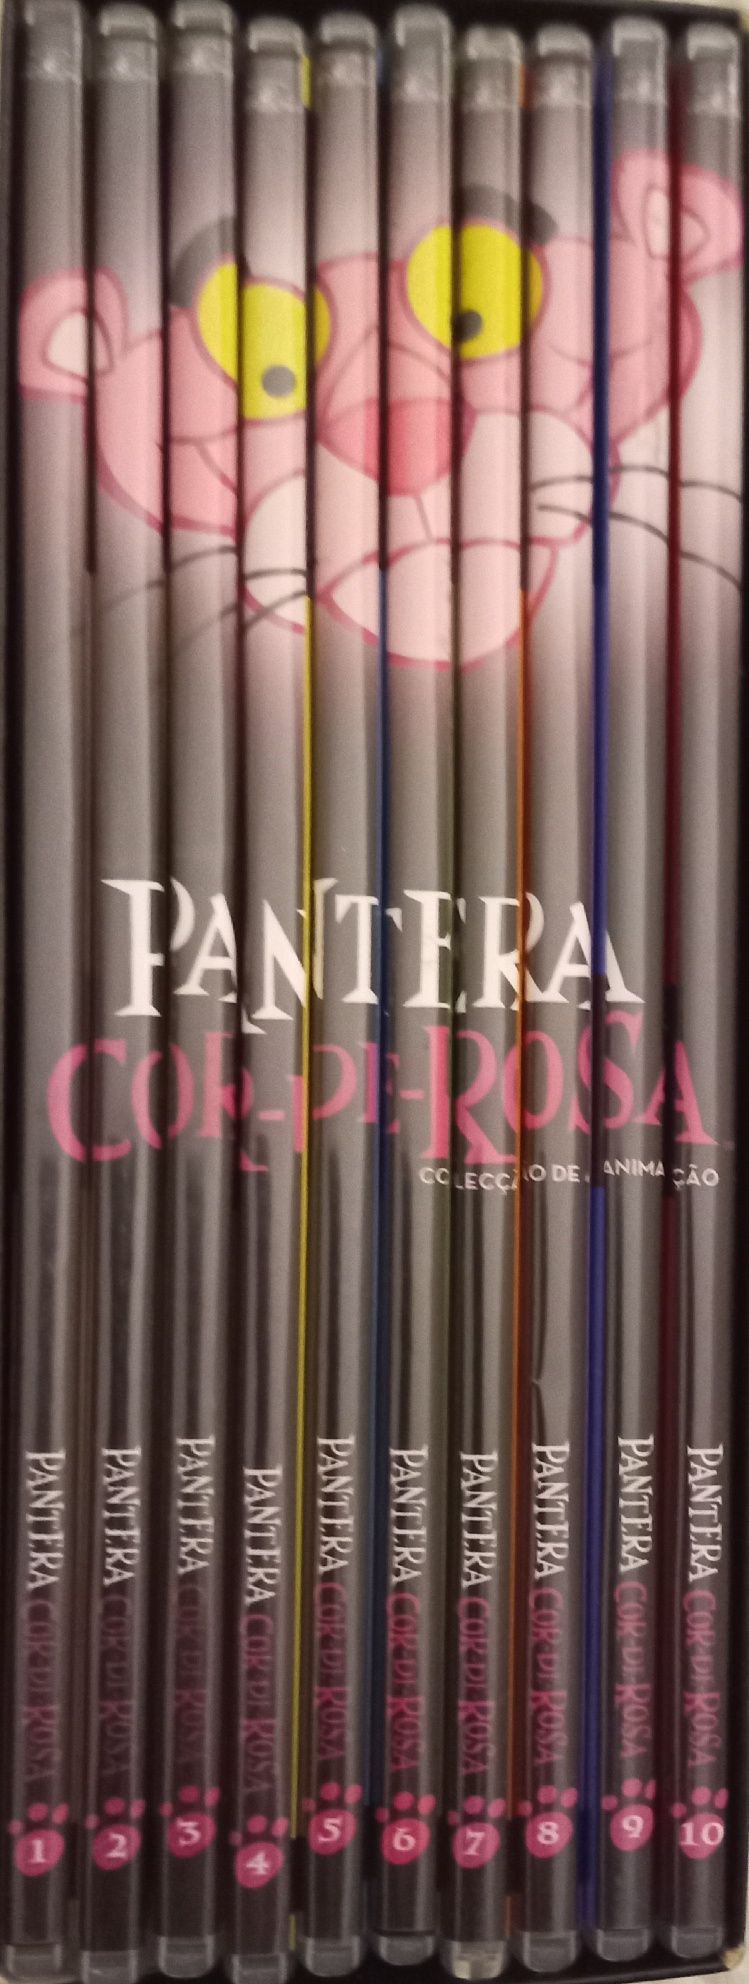 Pantera Cor de Rosa - Coleção DVD